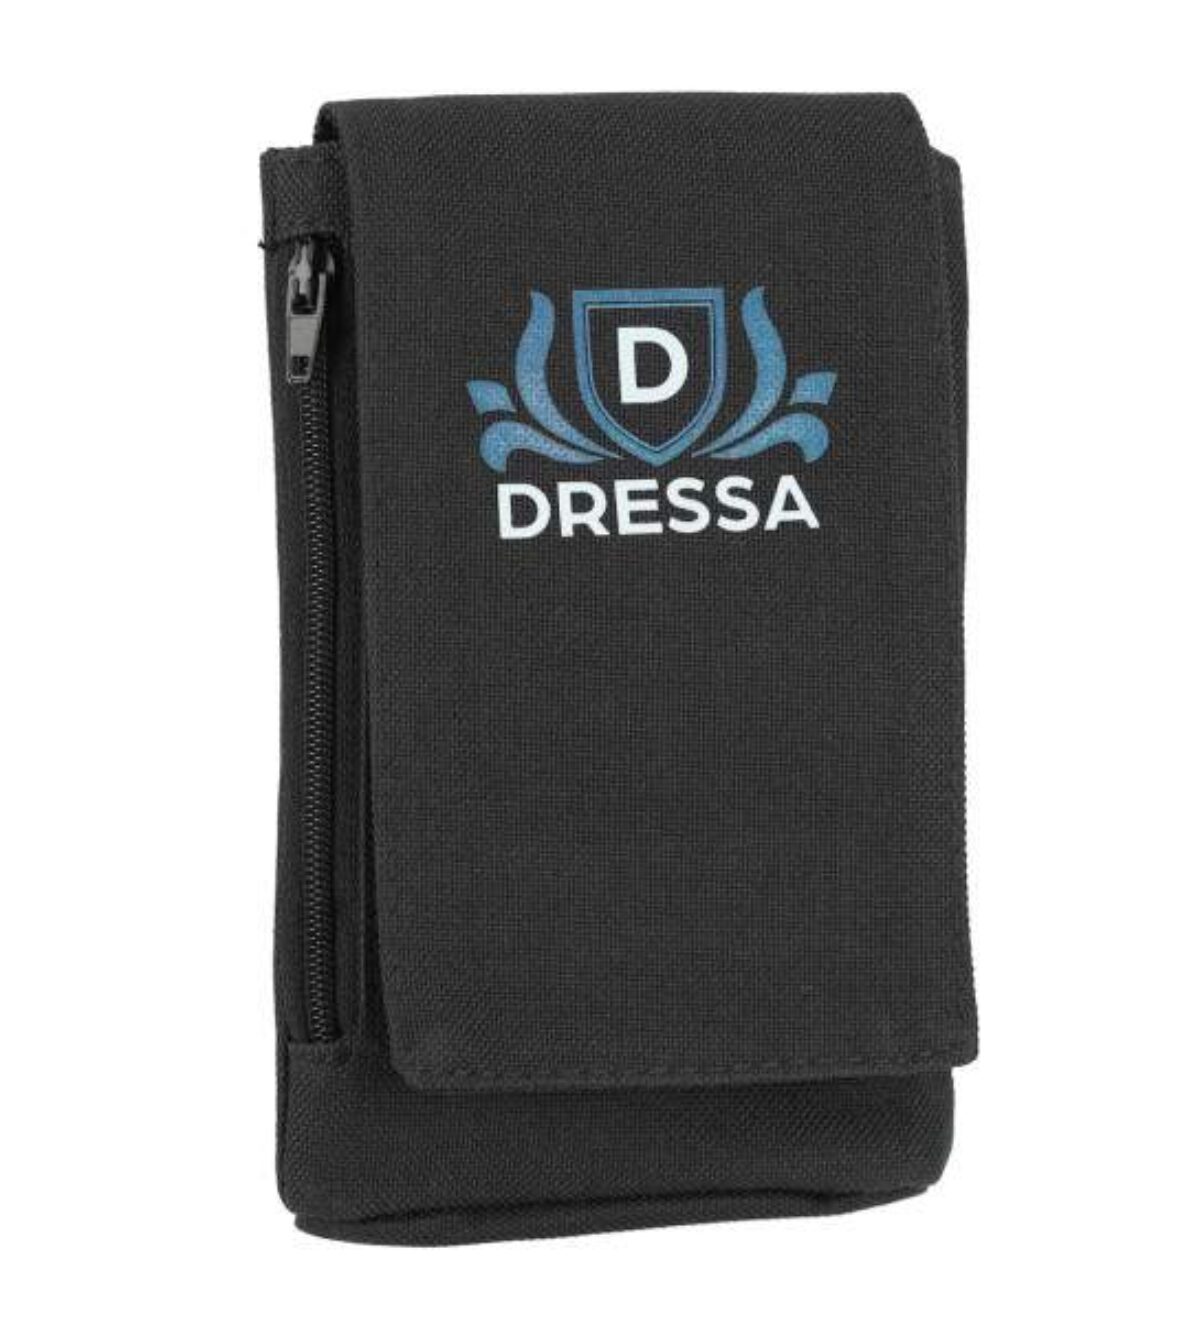 Dressa Phone nyakba akasztható övre fűzhető univerzális telefontok - fekete_d146750_Mirunska.com